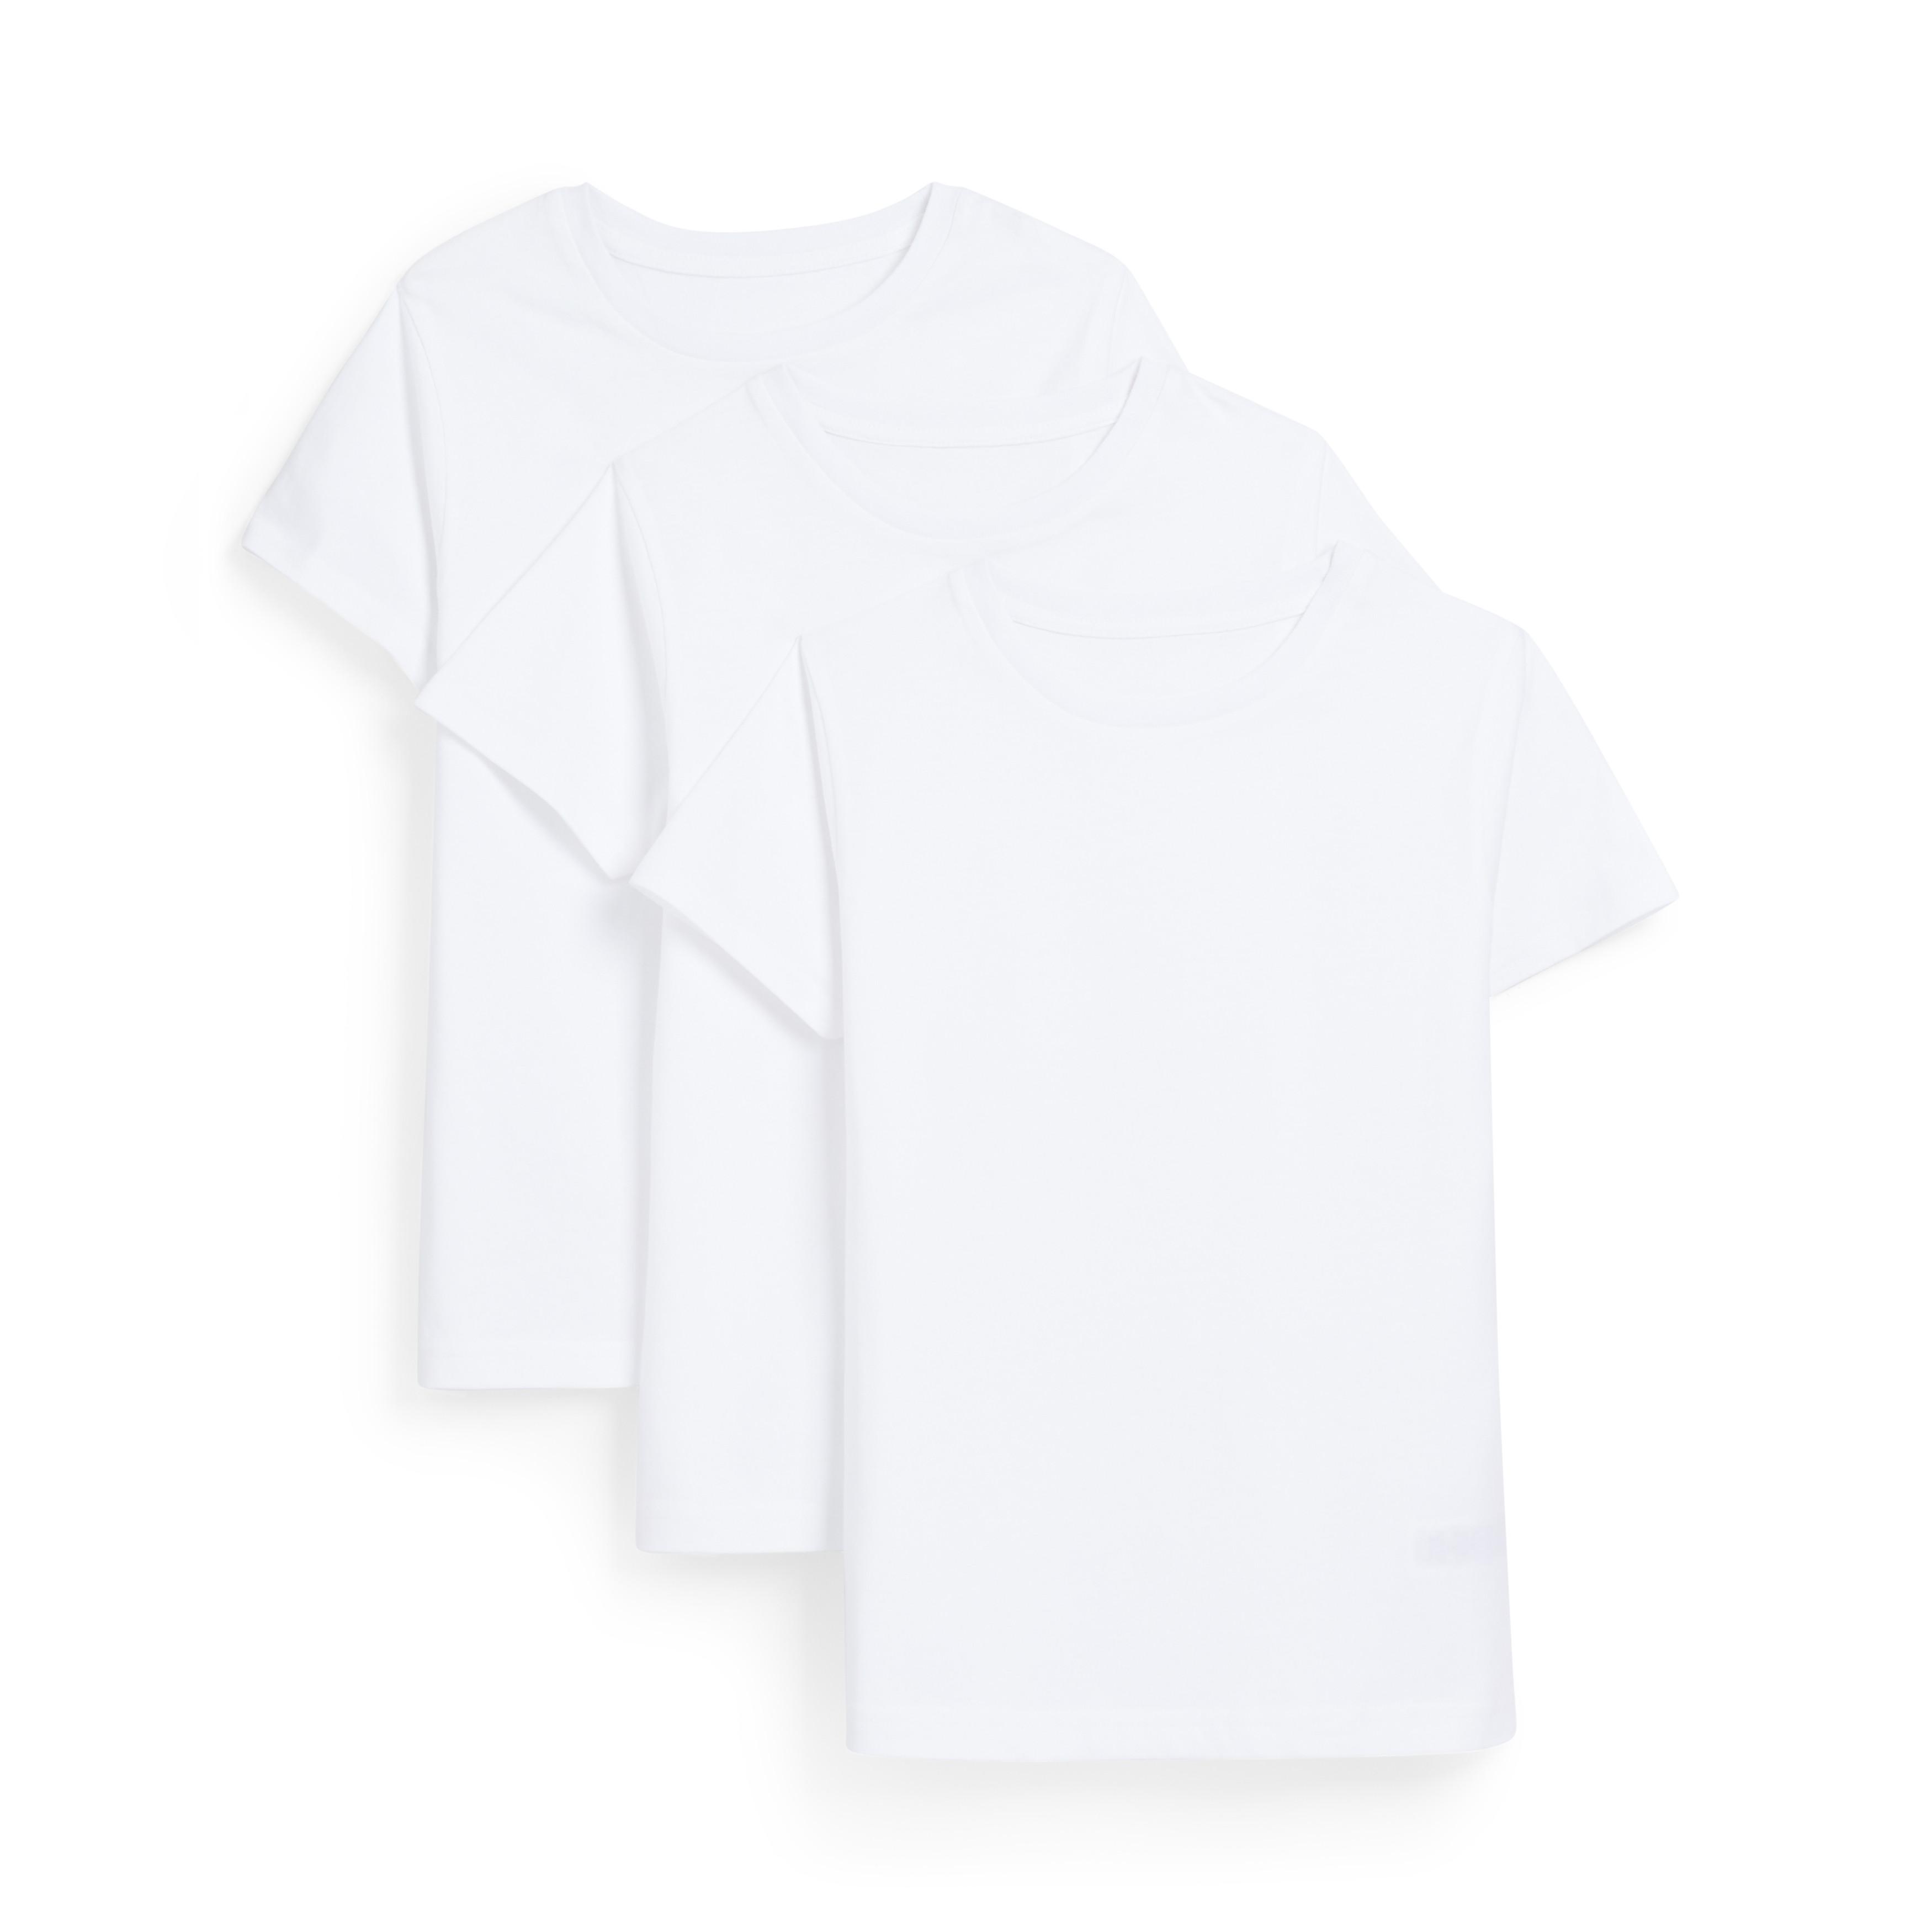 Pack de 5 camisetas blancas niño | Accesorios niños | Ropa niños | Todos los productos Primark | Primark España